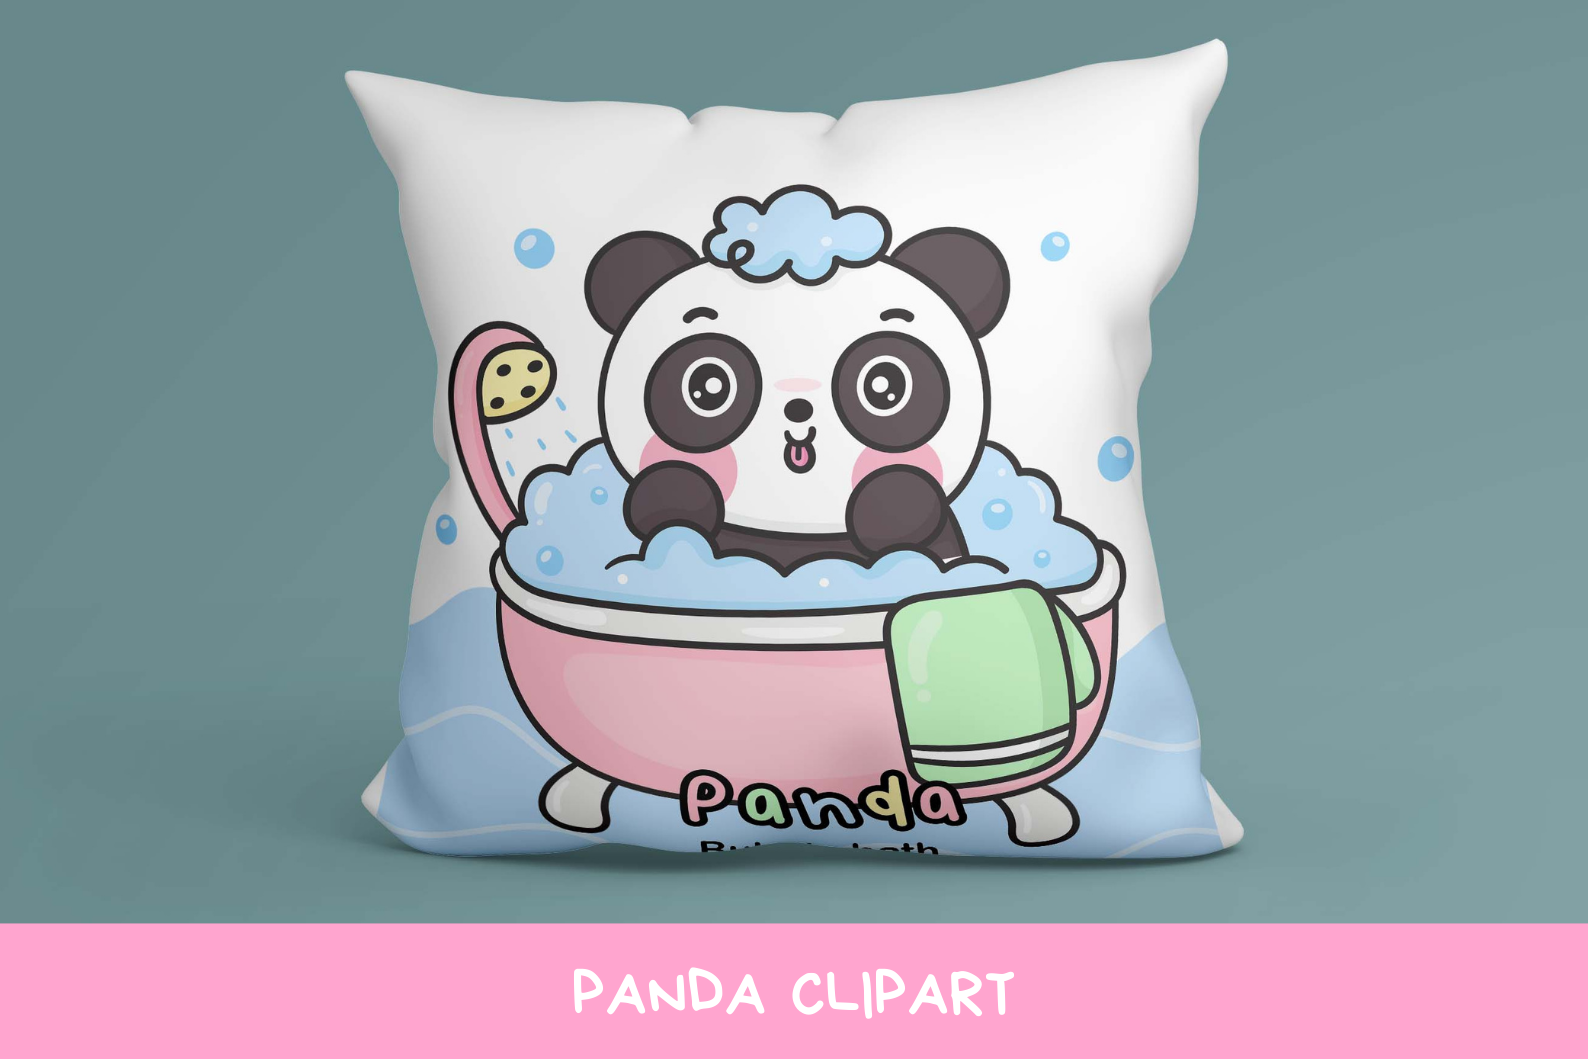 Cute Panda baby animals kawaii clipart birthday party By Vividdiy8